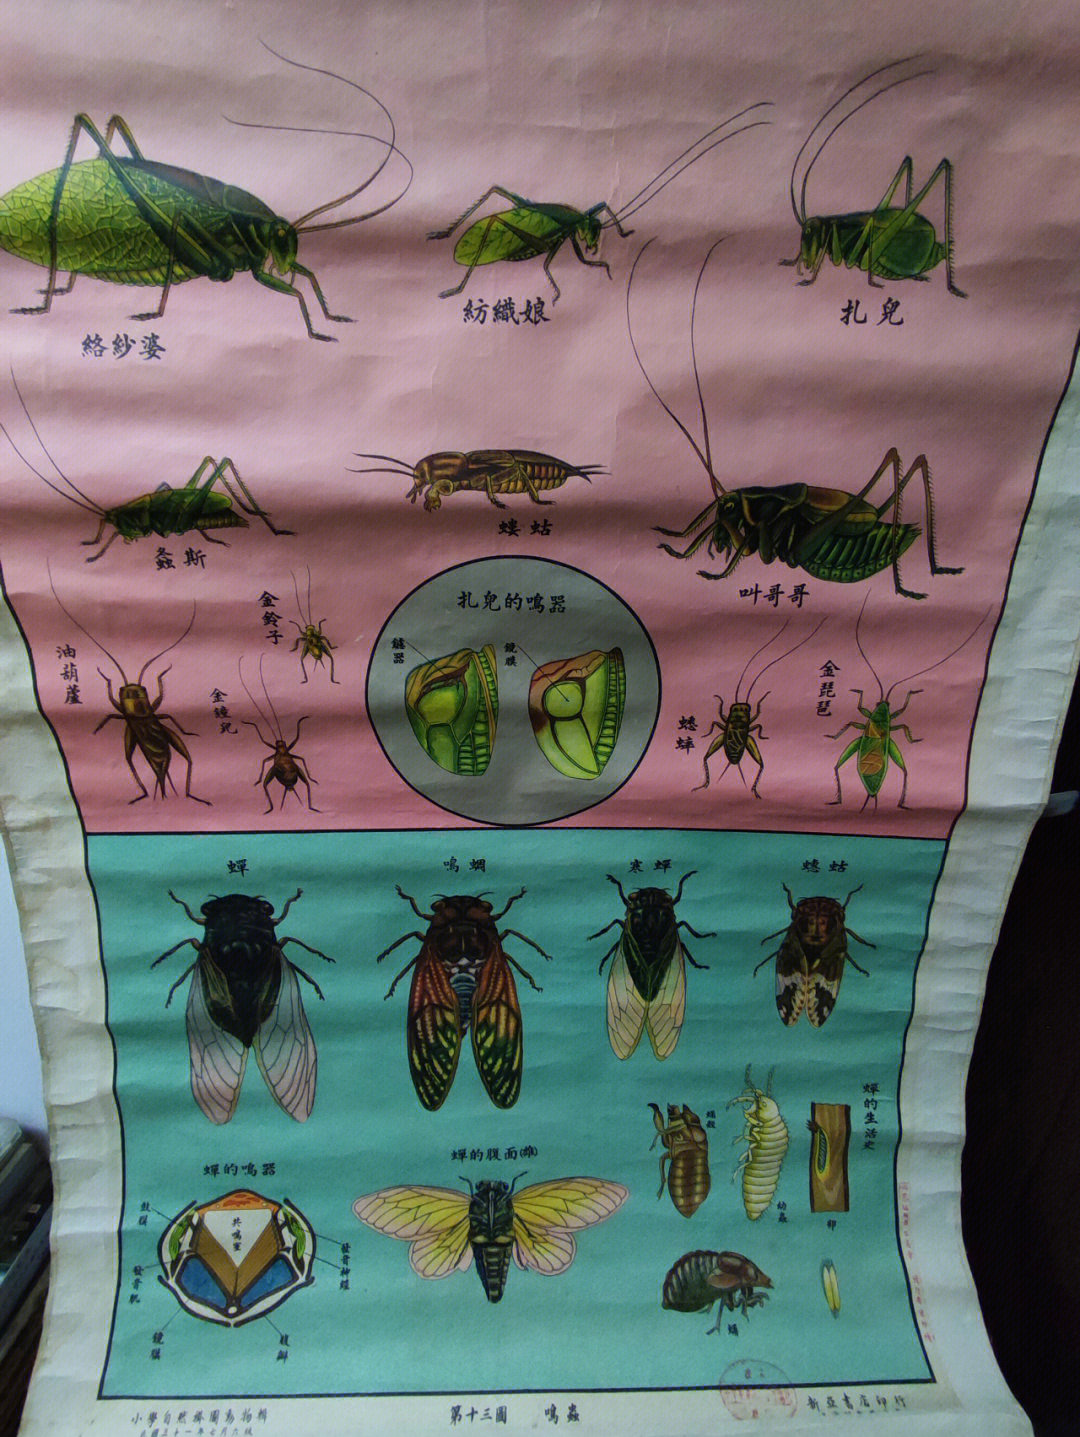 多种类我以为只有蟋蟀和蝉两种名字也好听蟋蟀类有纺织娘,扎儿,金铃子